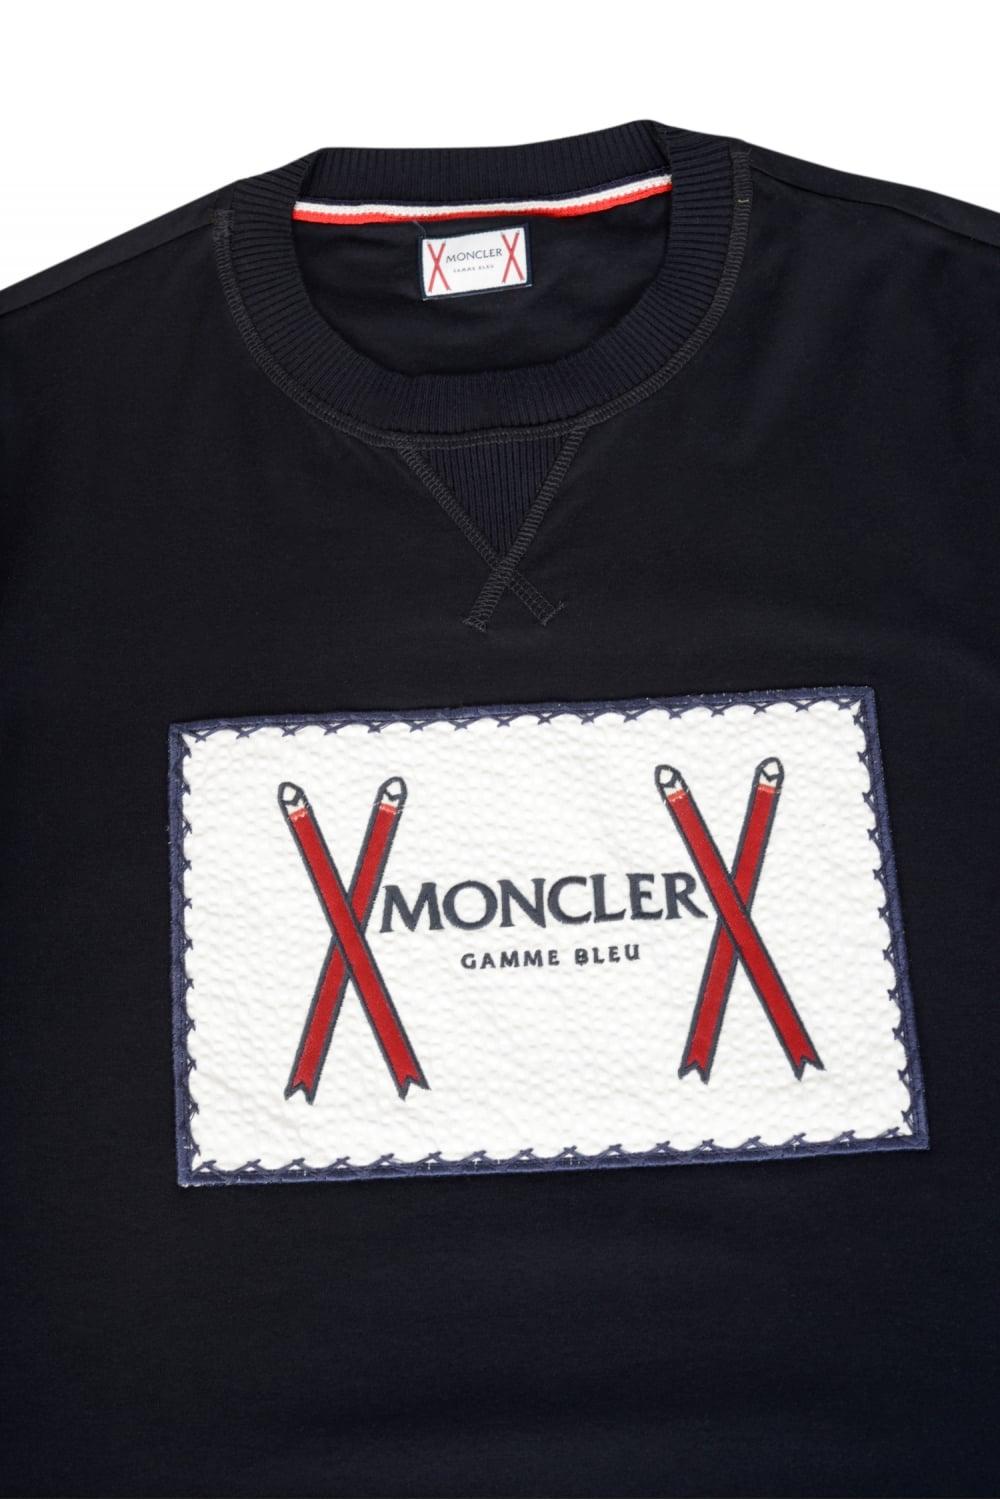 Moncler Logo - MONCLER Patch Logo T-Shirt Navy - Clothing from Circle Fashion UK